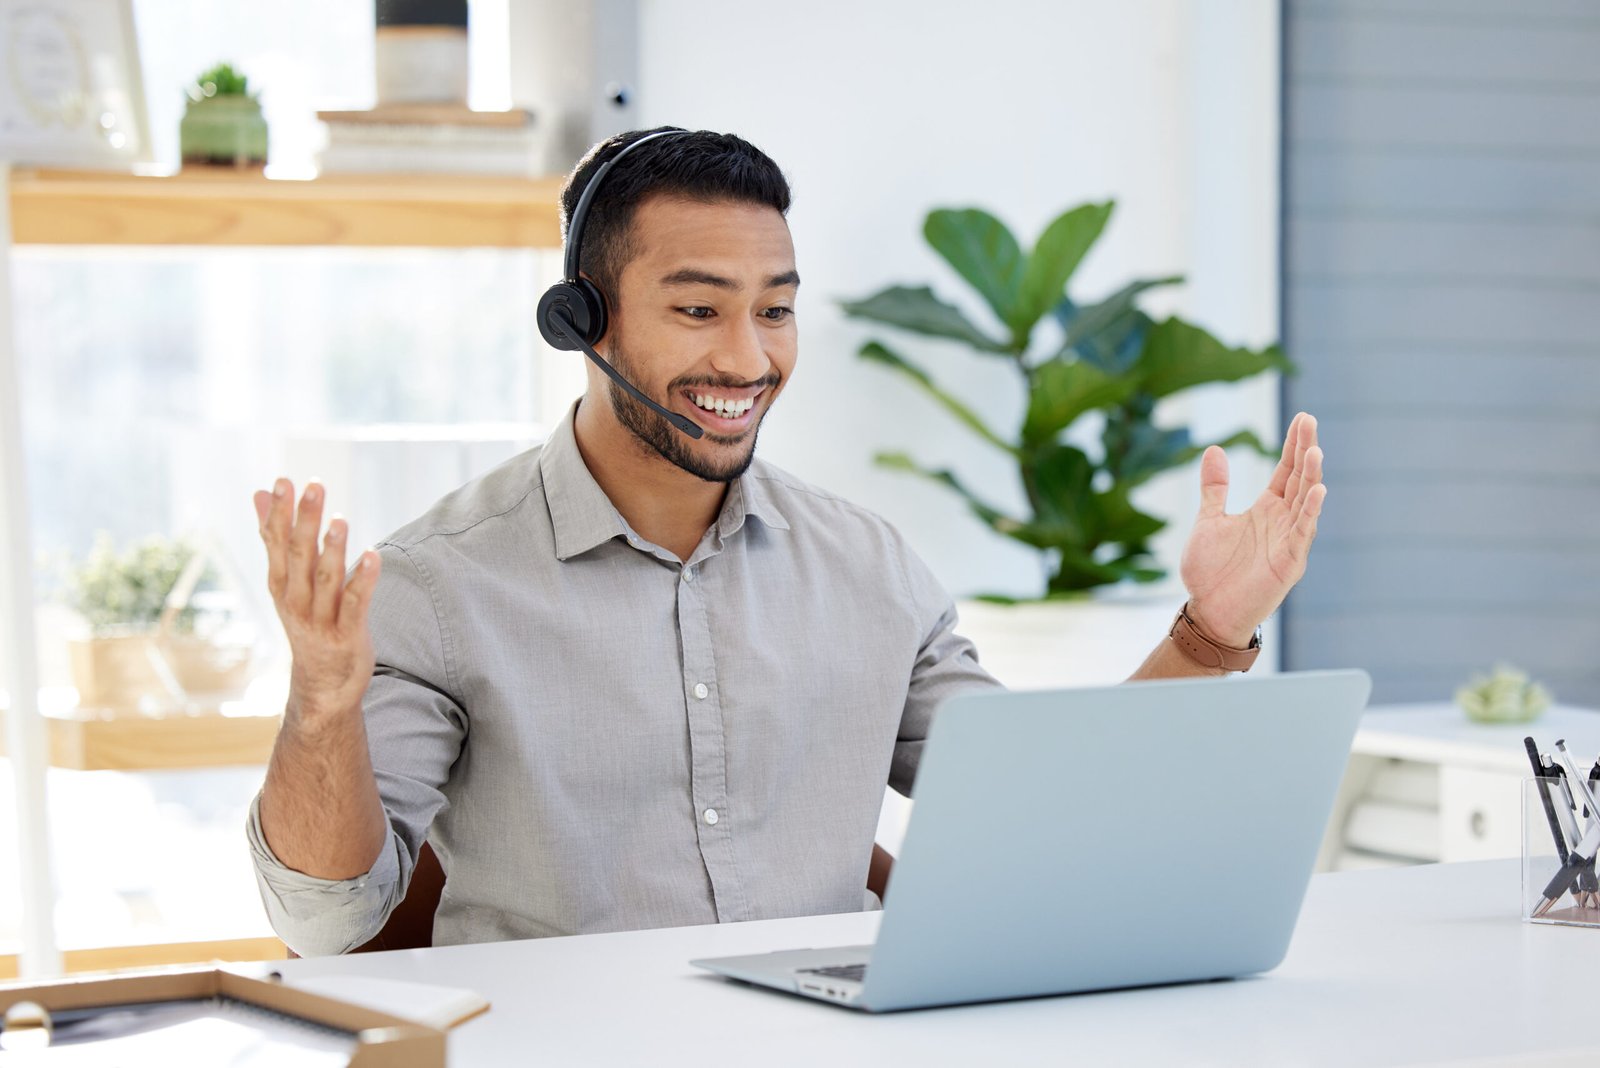 Service clientèle dédié d'Hexuvium : un professionnel heureux et engageant utilisant un geste de main pour saluer un client lors d'une session de support en ligne.